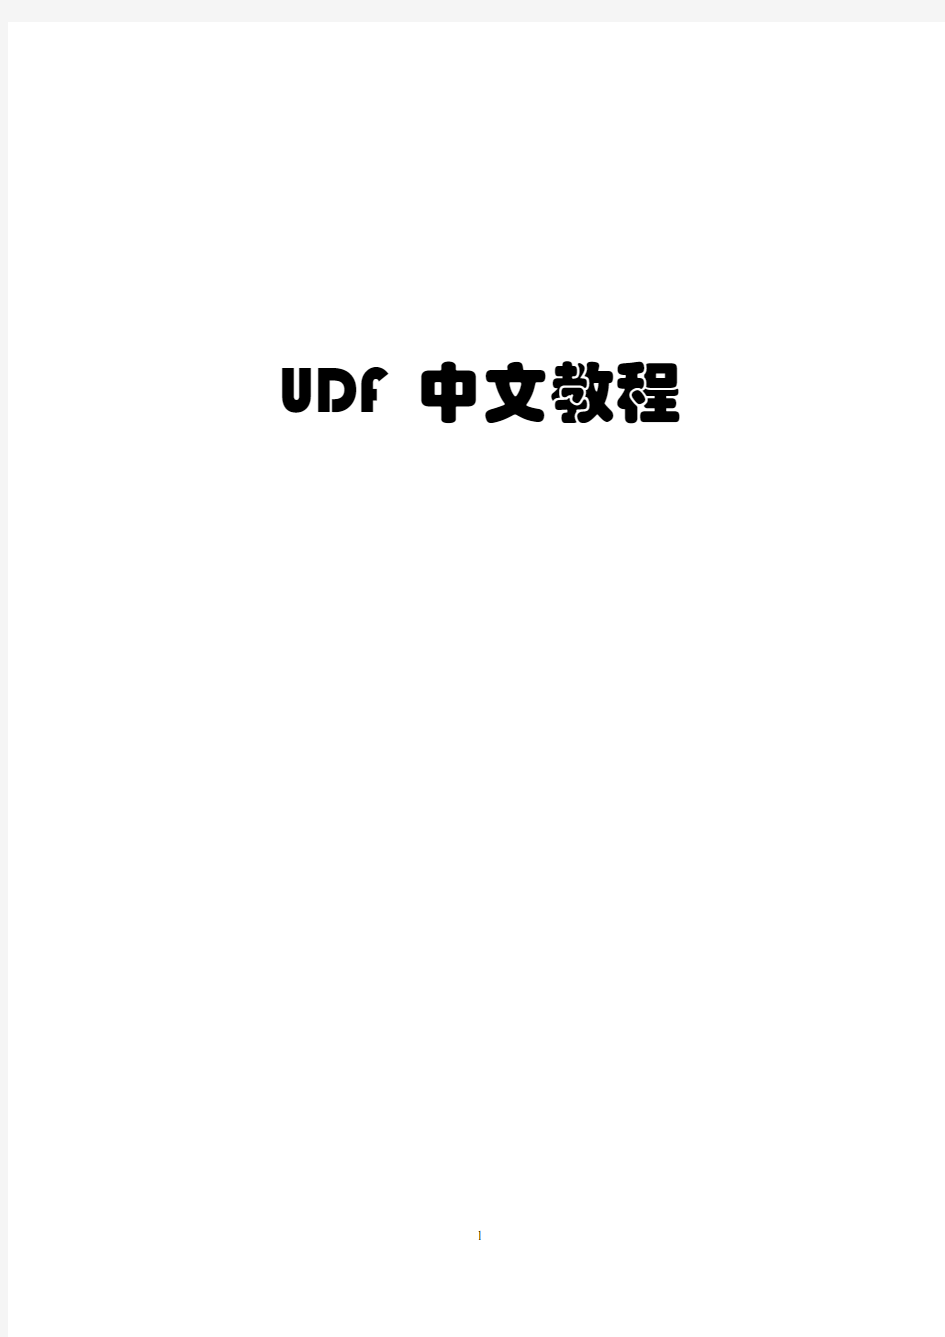 Fluent UDF教程